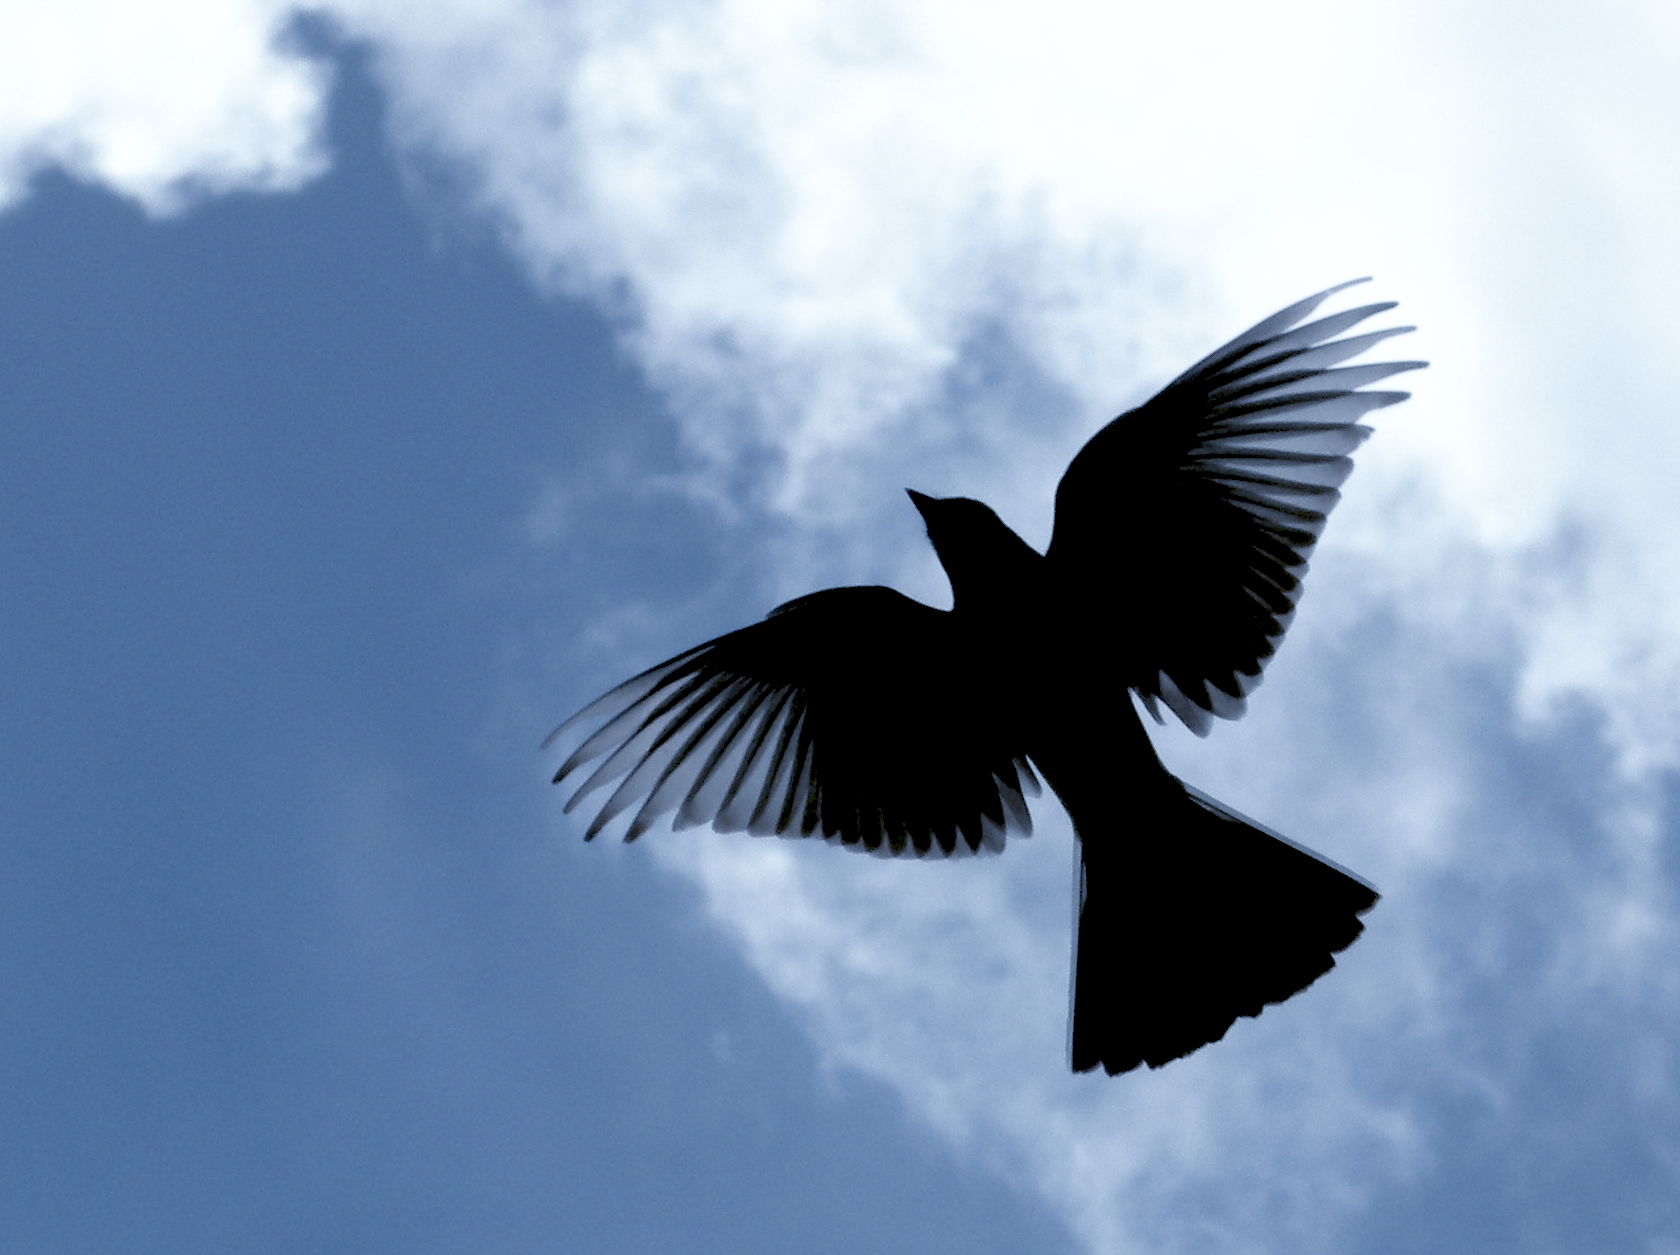 A bird soaring through the sky.